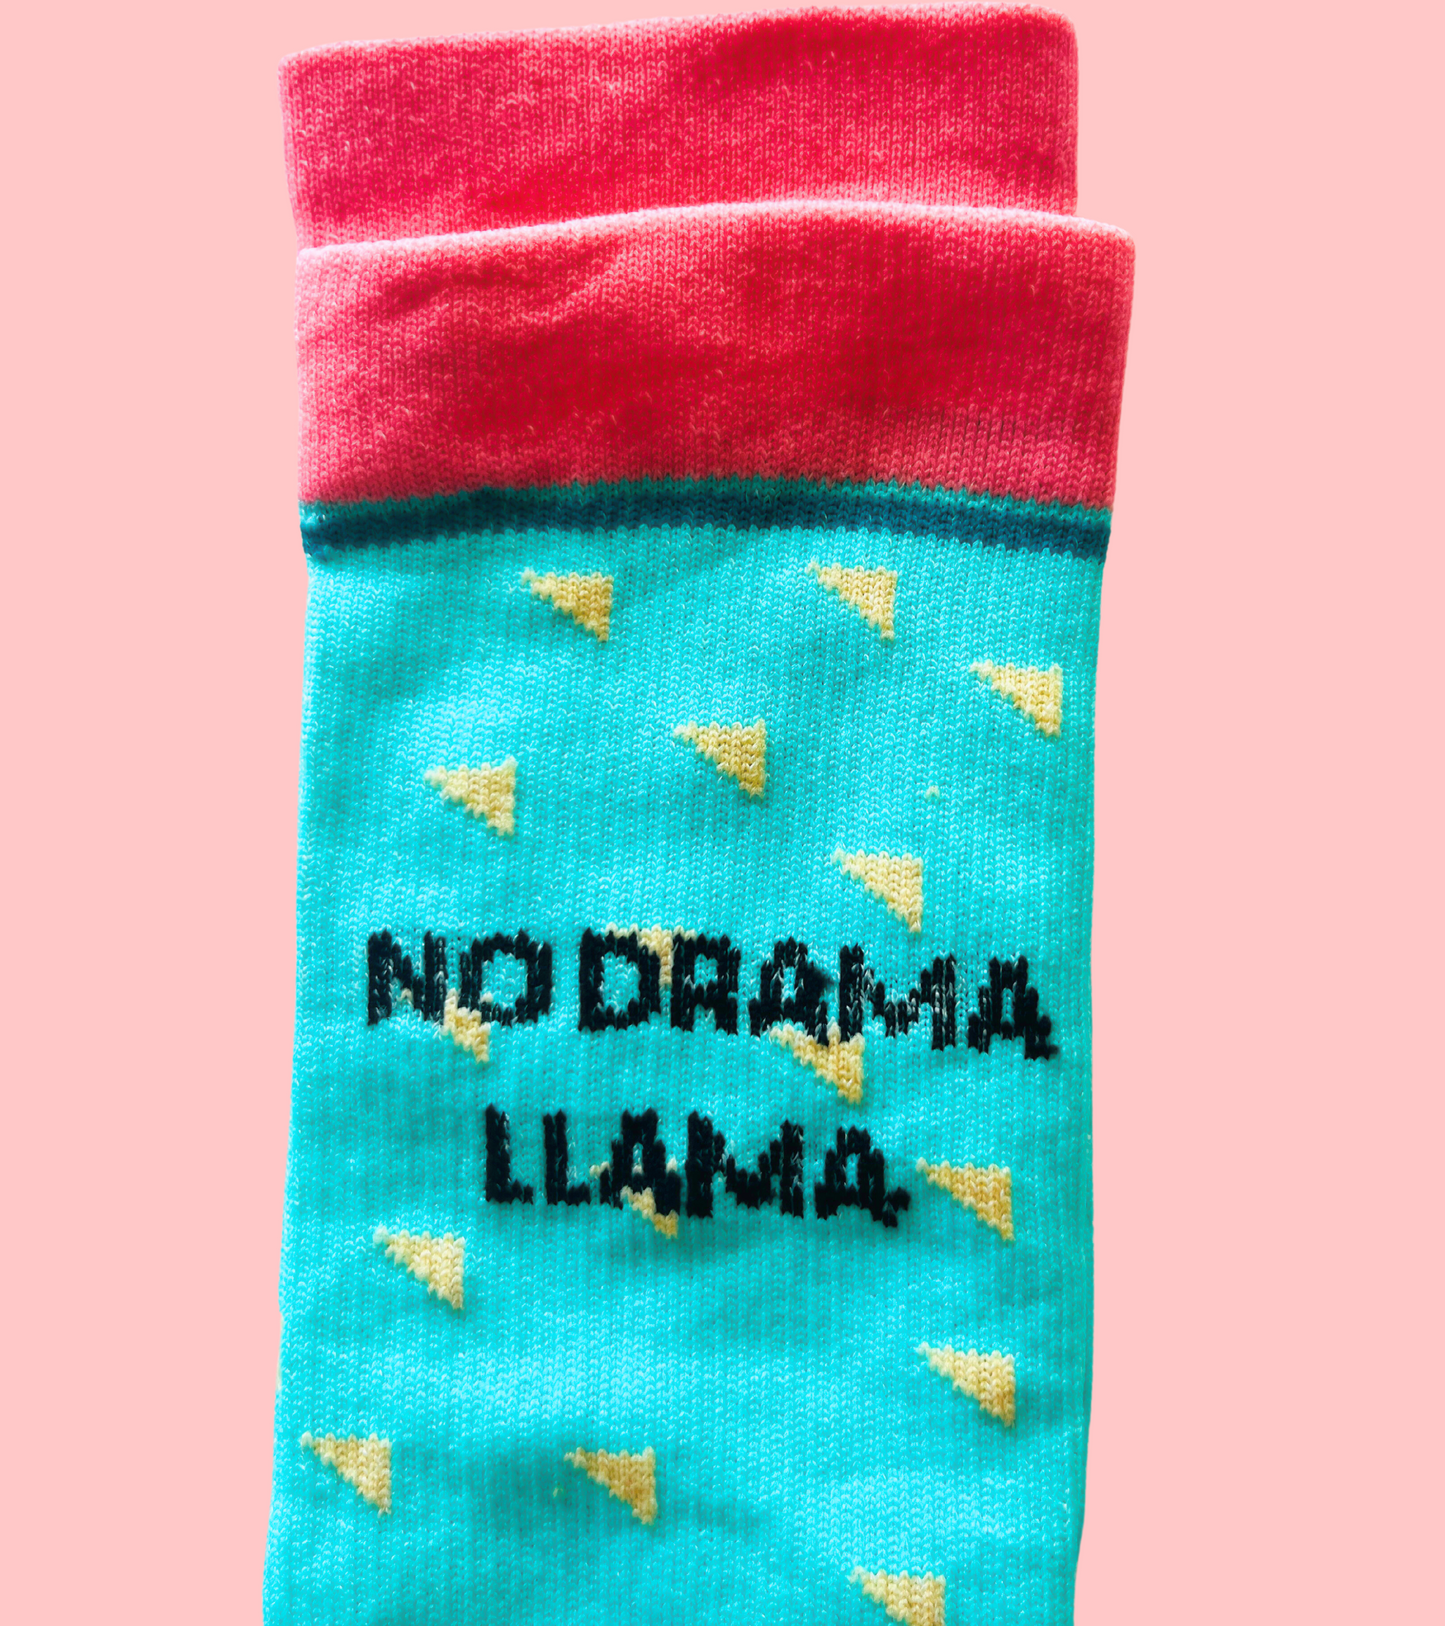 No Drama Llama Compression Socks